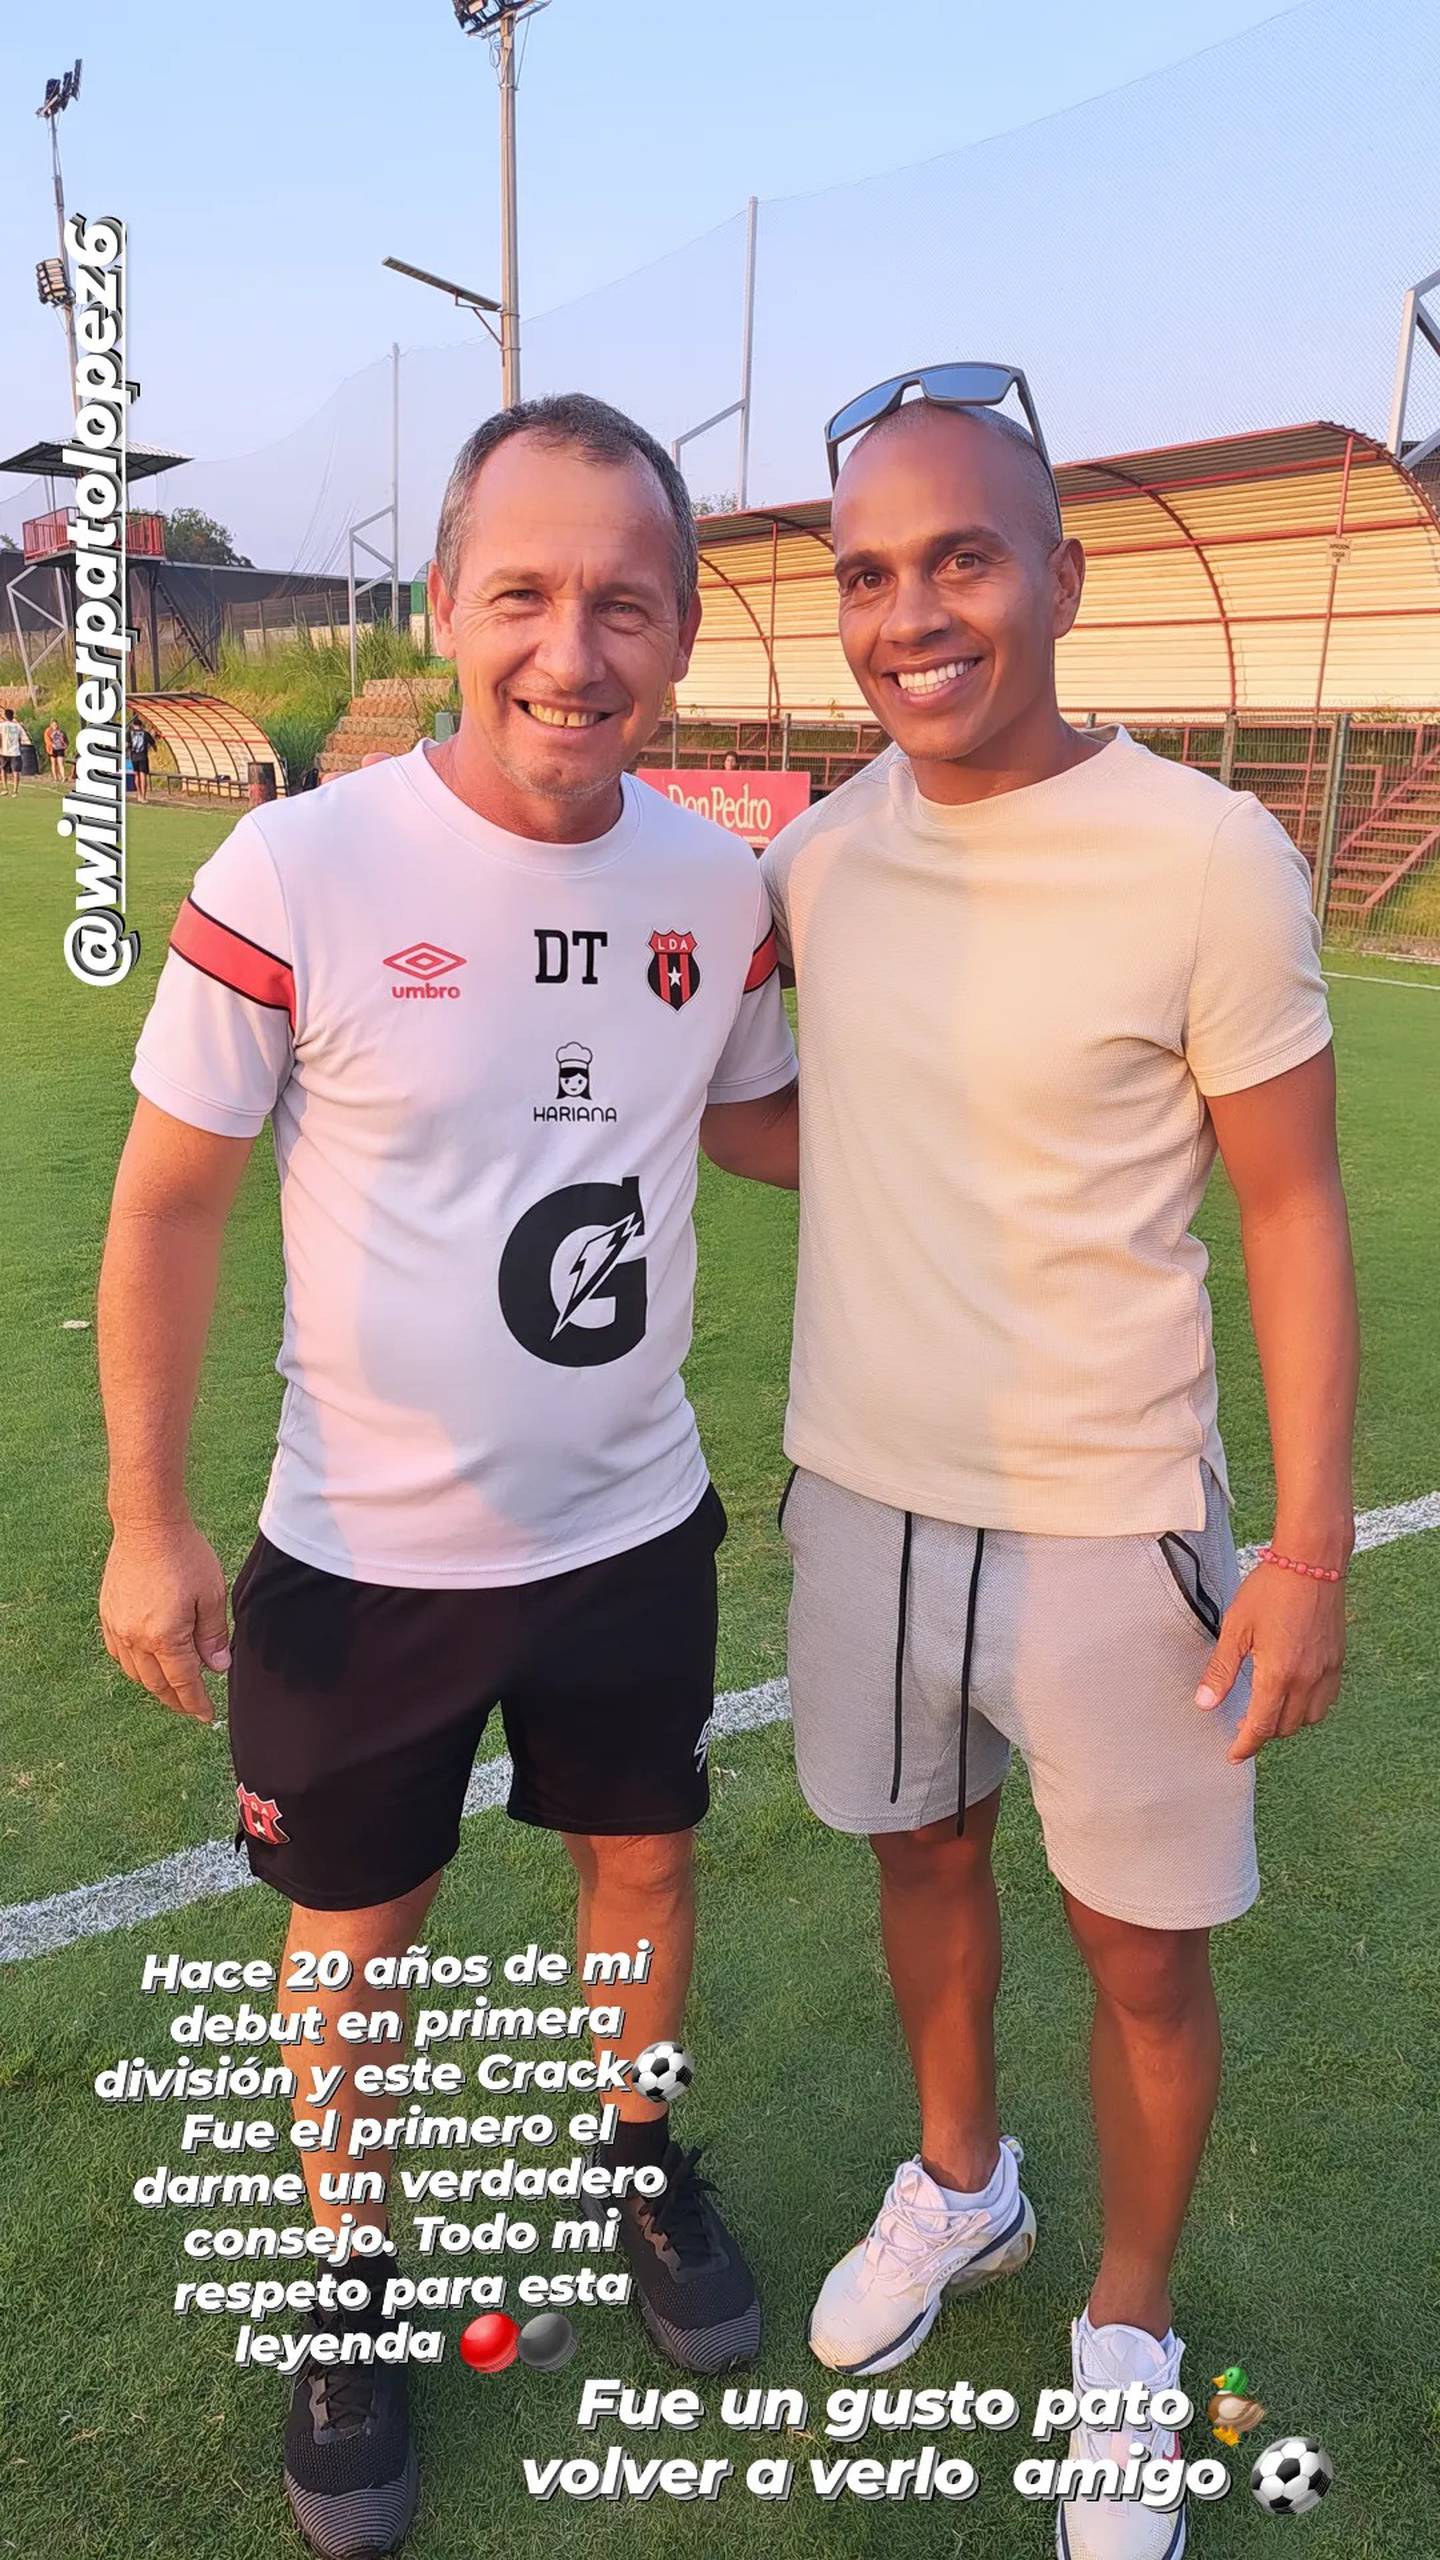 Johan Condega rajó del consejo que le dio Wilmer López en su debut en primera división. Foto: Instagram.